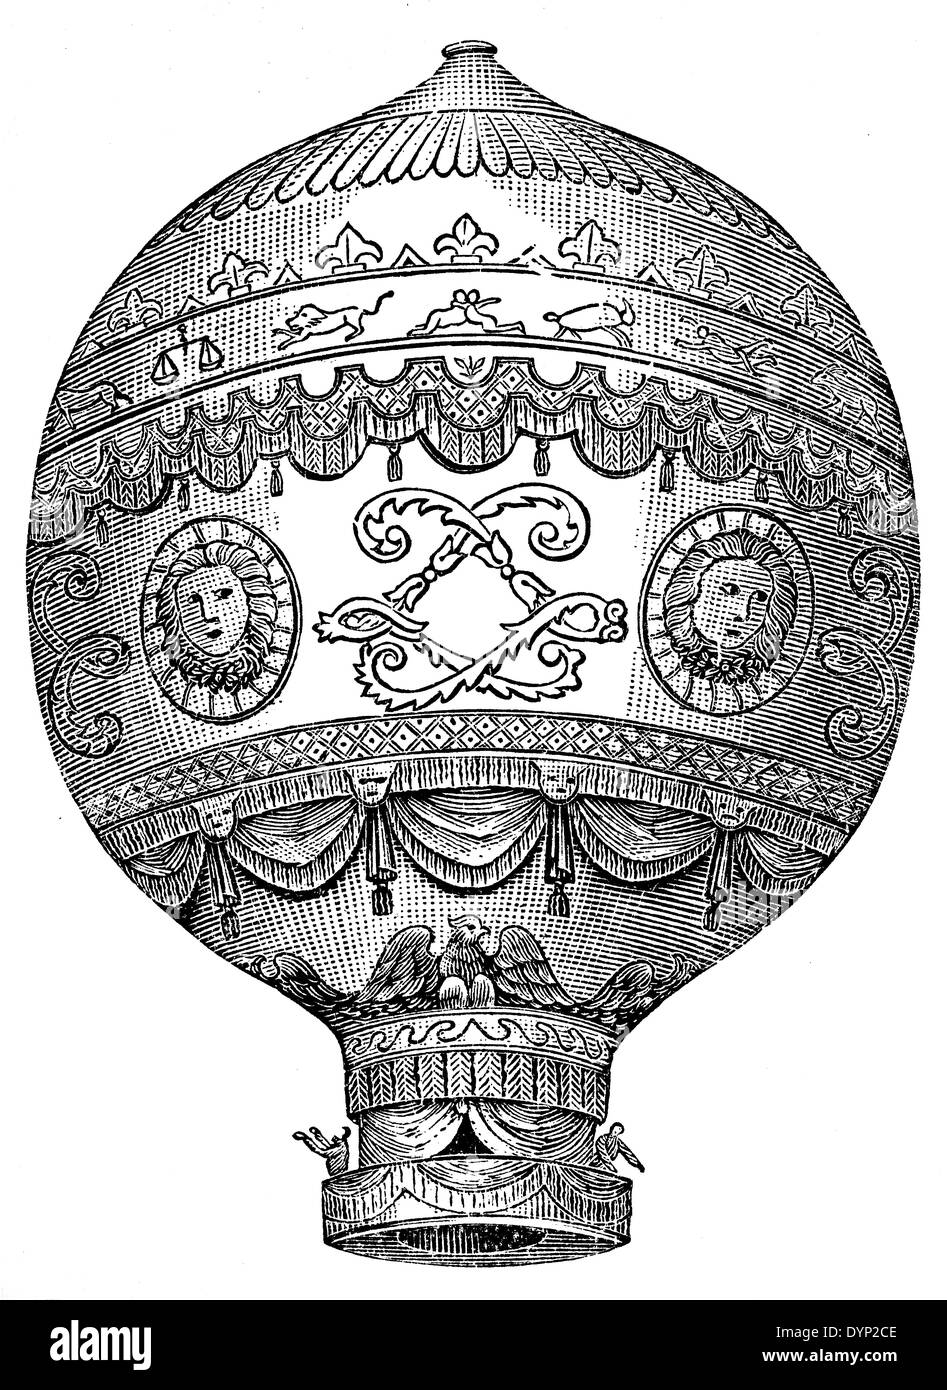 Primo palloncino untethered volo, Rozier e il Marchese d'Arlandes (21 novembre 1783) Foto Stock